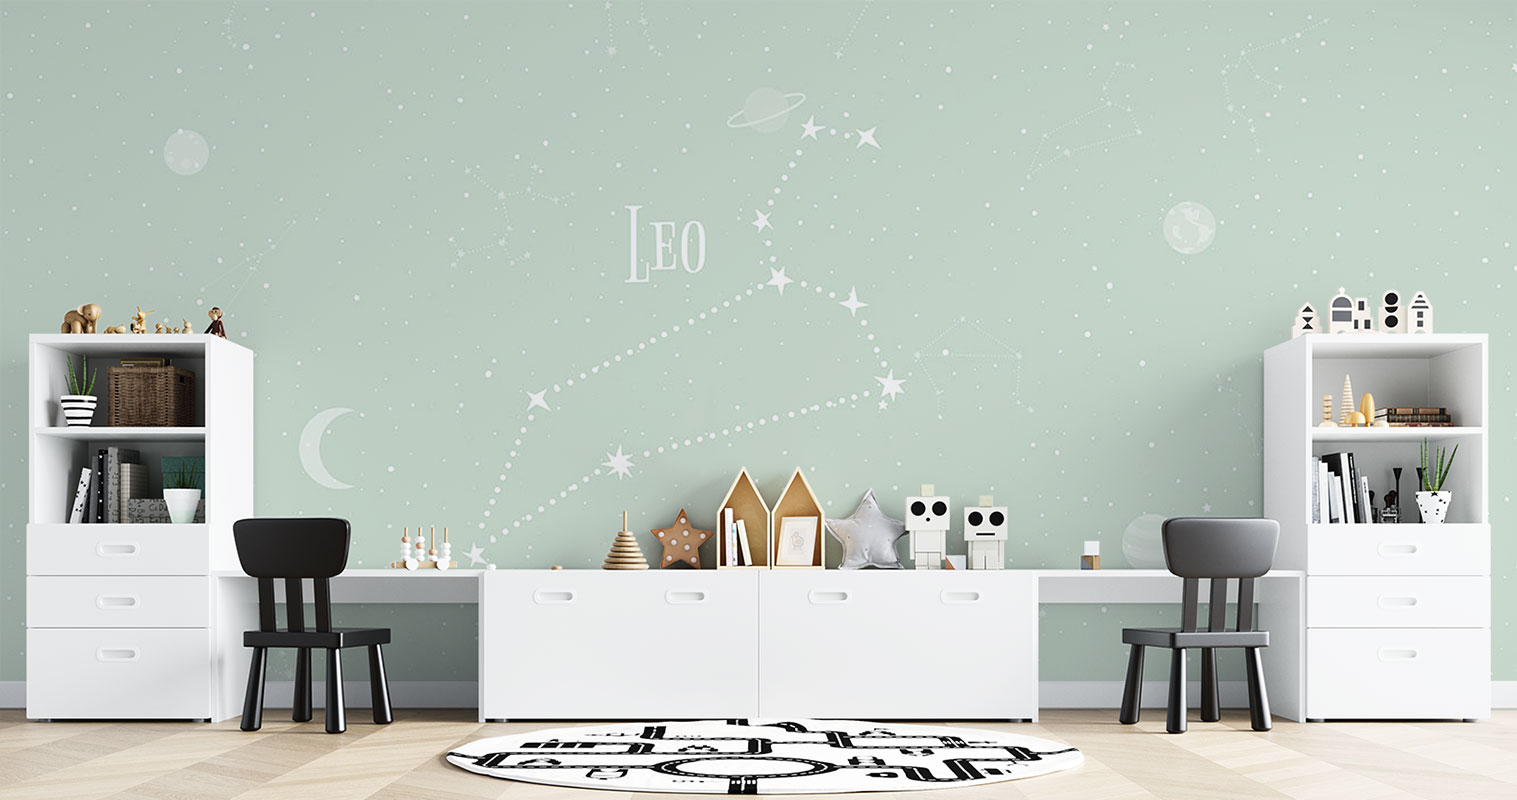 Horoscope Leo – Light Green